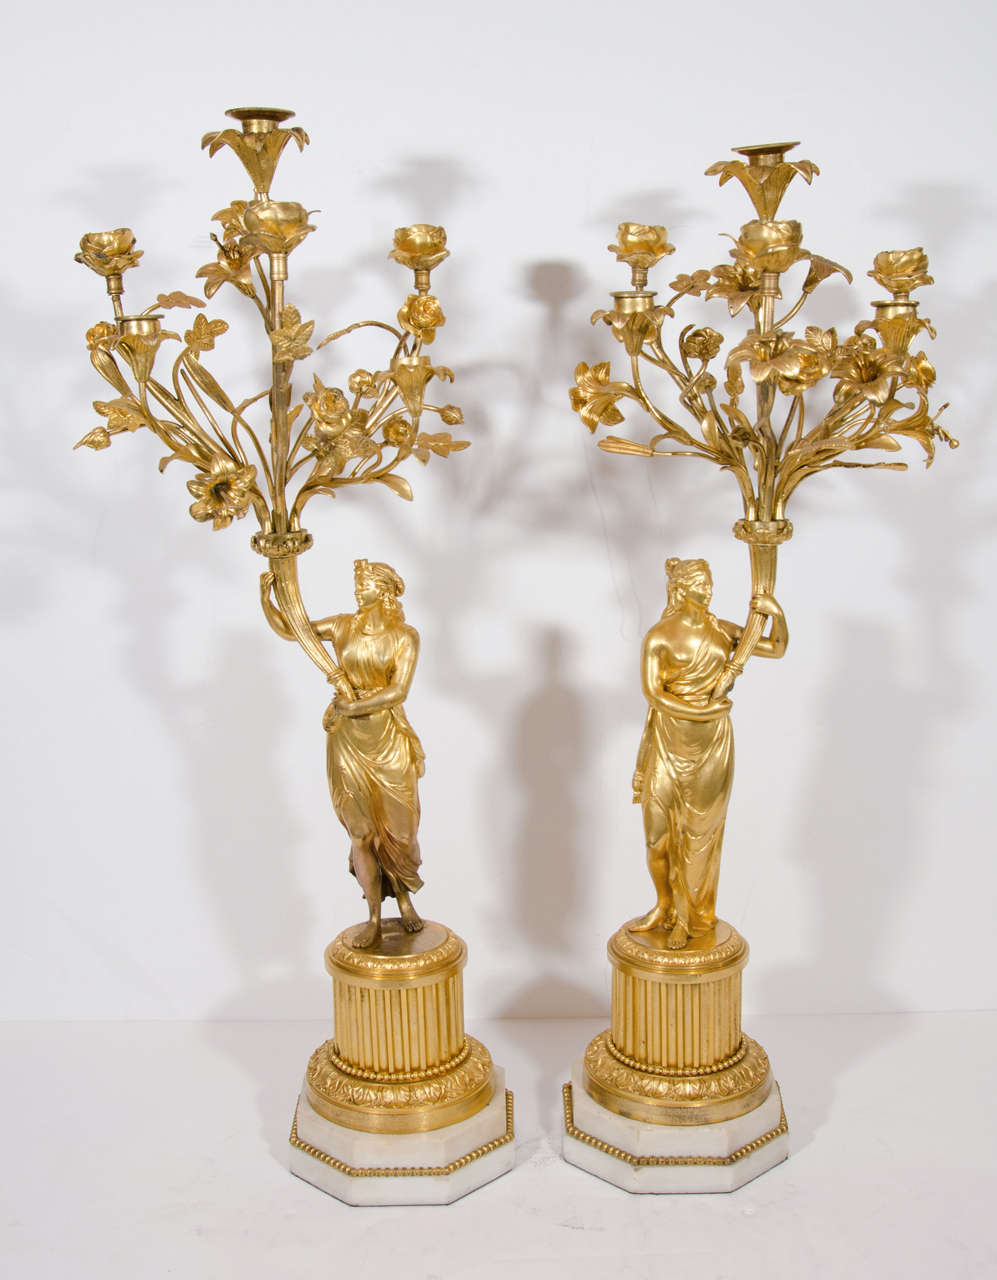 Ein Paar große antike französische Louis XVI-Stil vergoldete Bronze figuralen mehrarmigen Kandelaber von exquisiten Details. Diese einzigartigen Kandelaber sind mit vergoldeten Bronzefiguren neoklassischer Damen verziert und mit Zweigen und Blumen